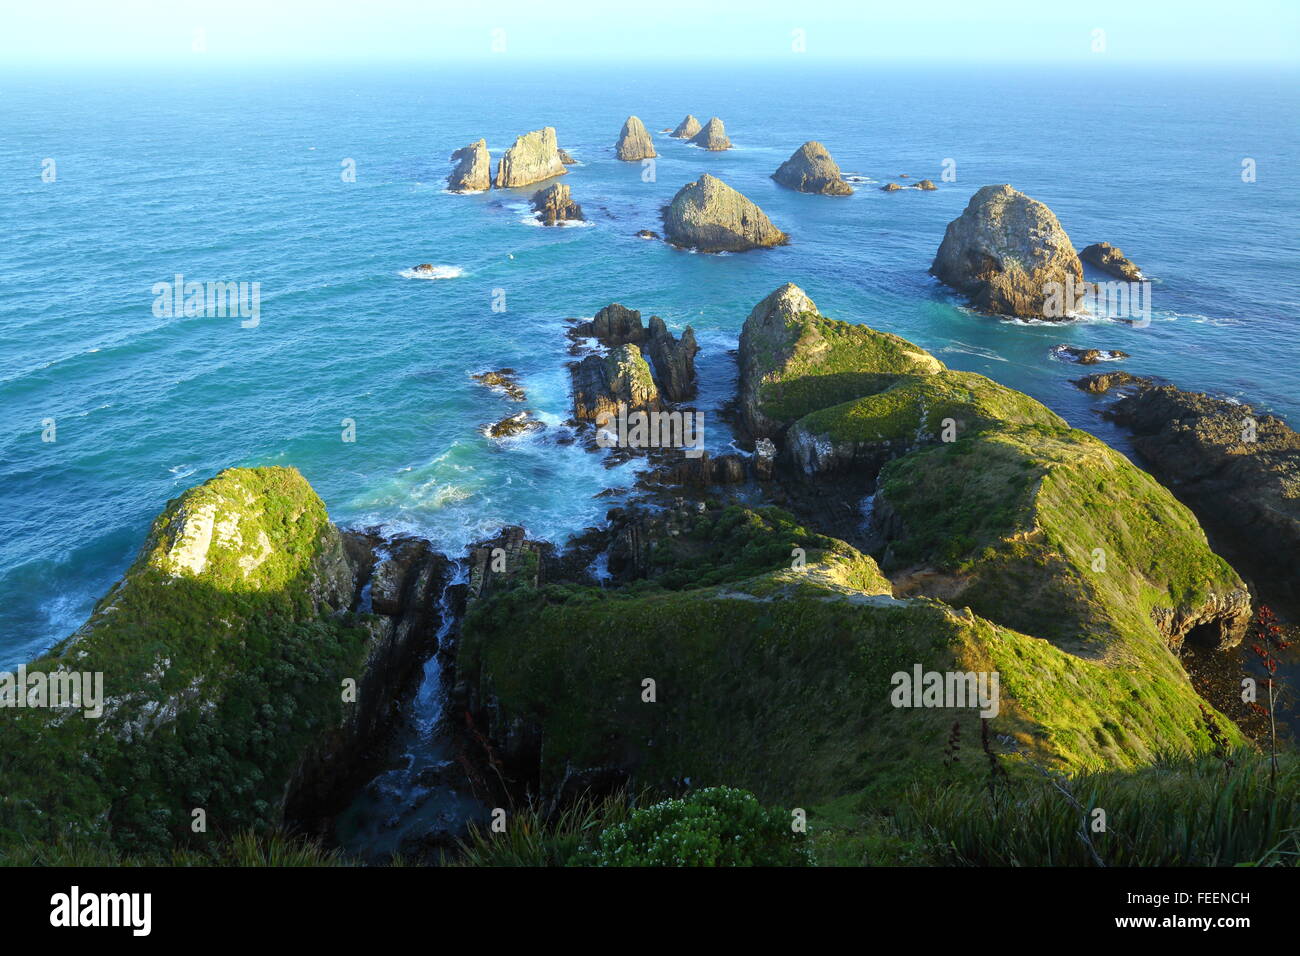 Einige von den zahlreichen "Nuggets" am Nugget Point Lighthouse an der Catlins Coast of New Zealand. Stockfoto